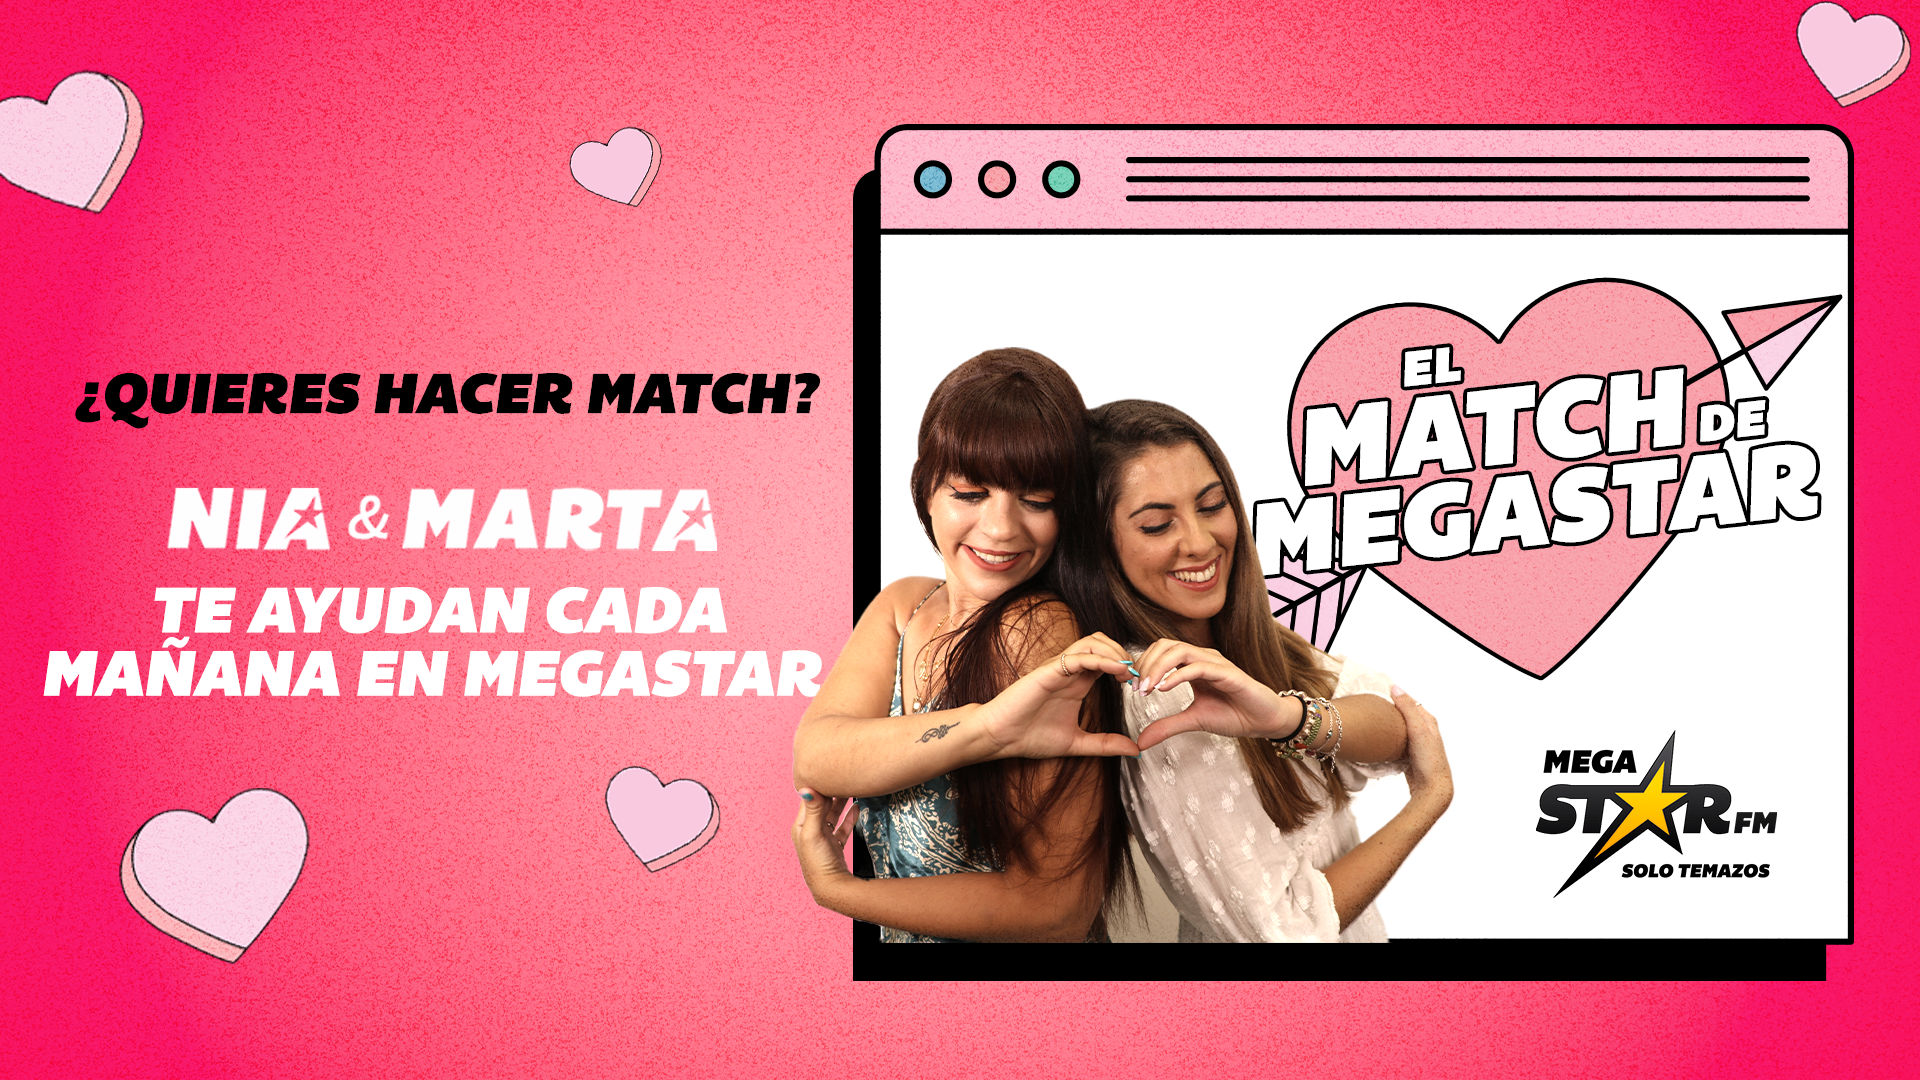 Diana y Edu hacen 'Match' en MegaStarFM e intercambian sus redes sociales: "Es muy mono"